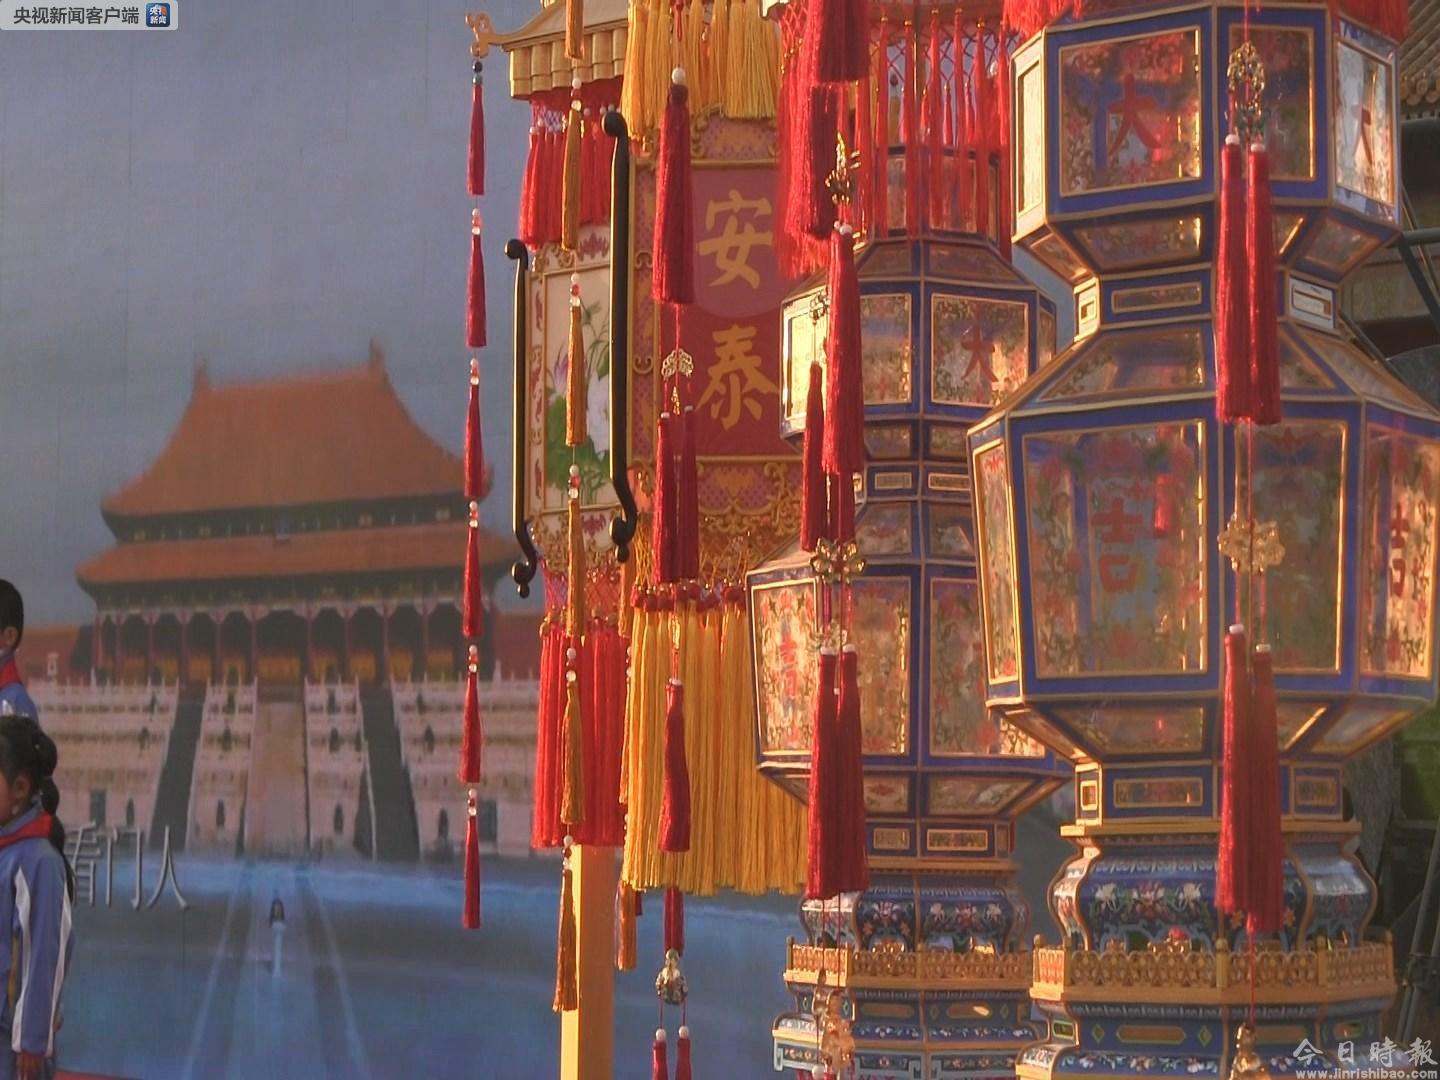 故宫博物院举行公益拍卖 天灯复原品拍价逾千万